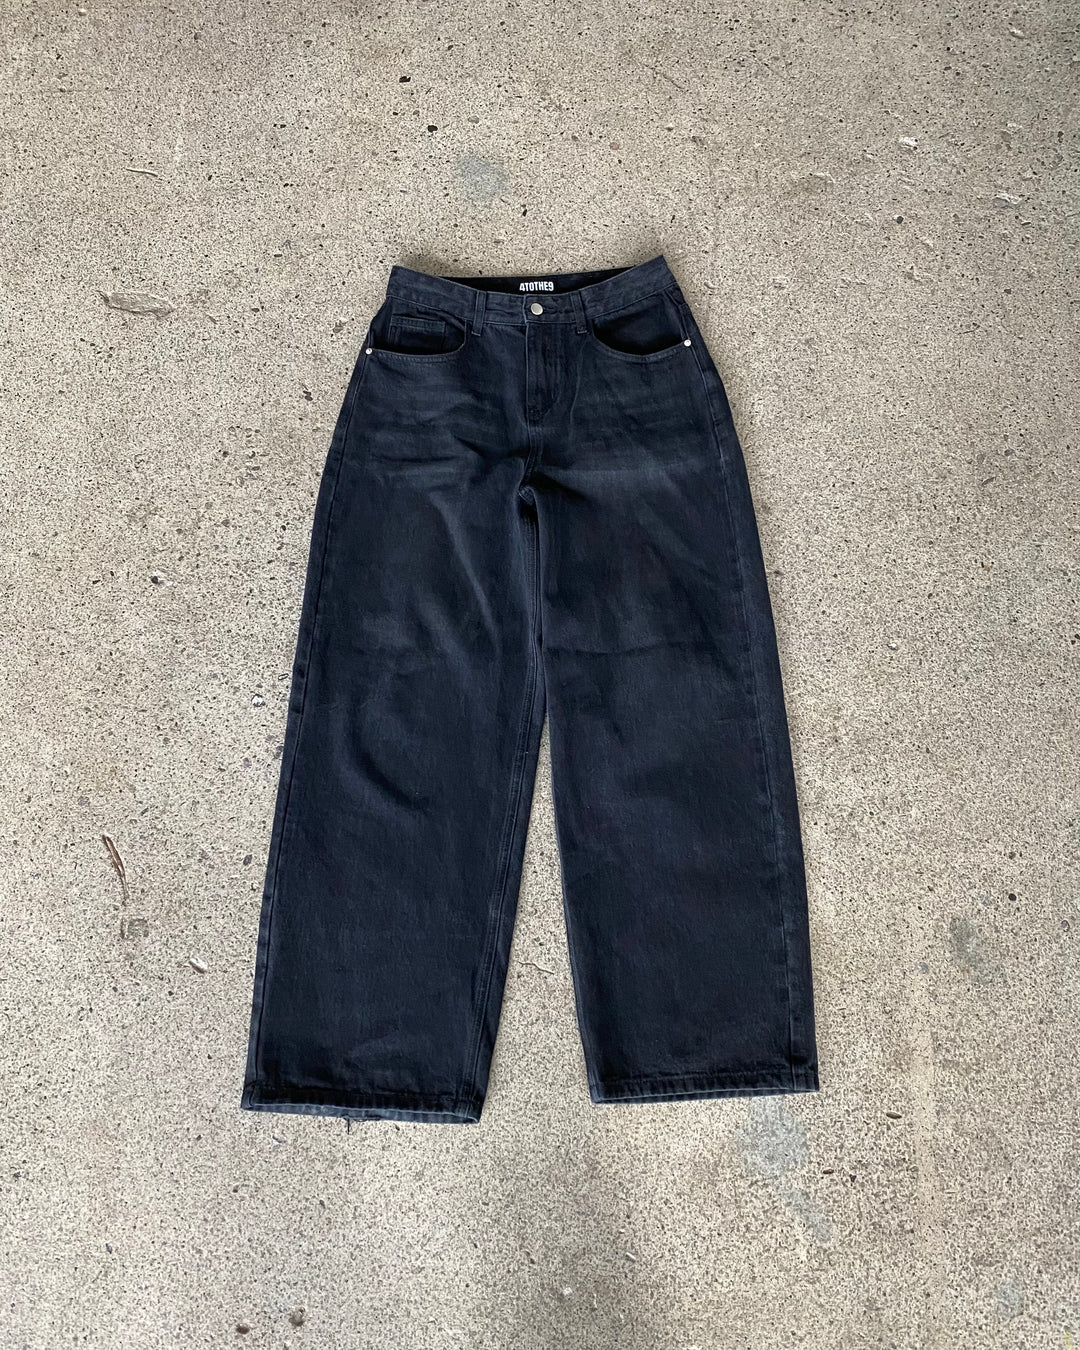 Midnight Black Distressed Denim Jeans